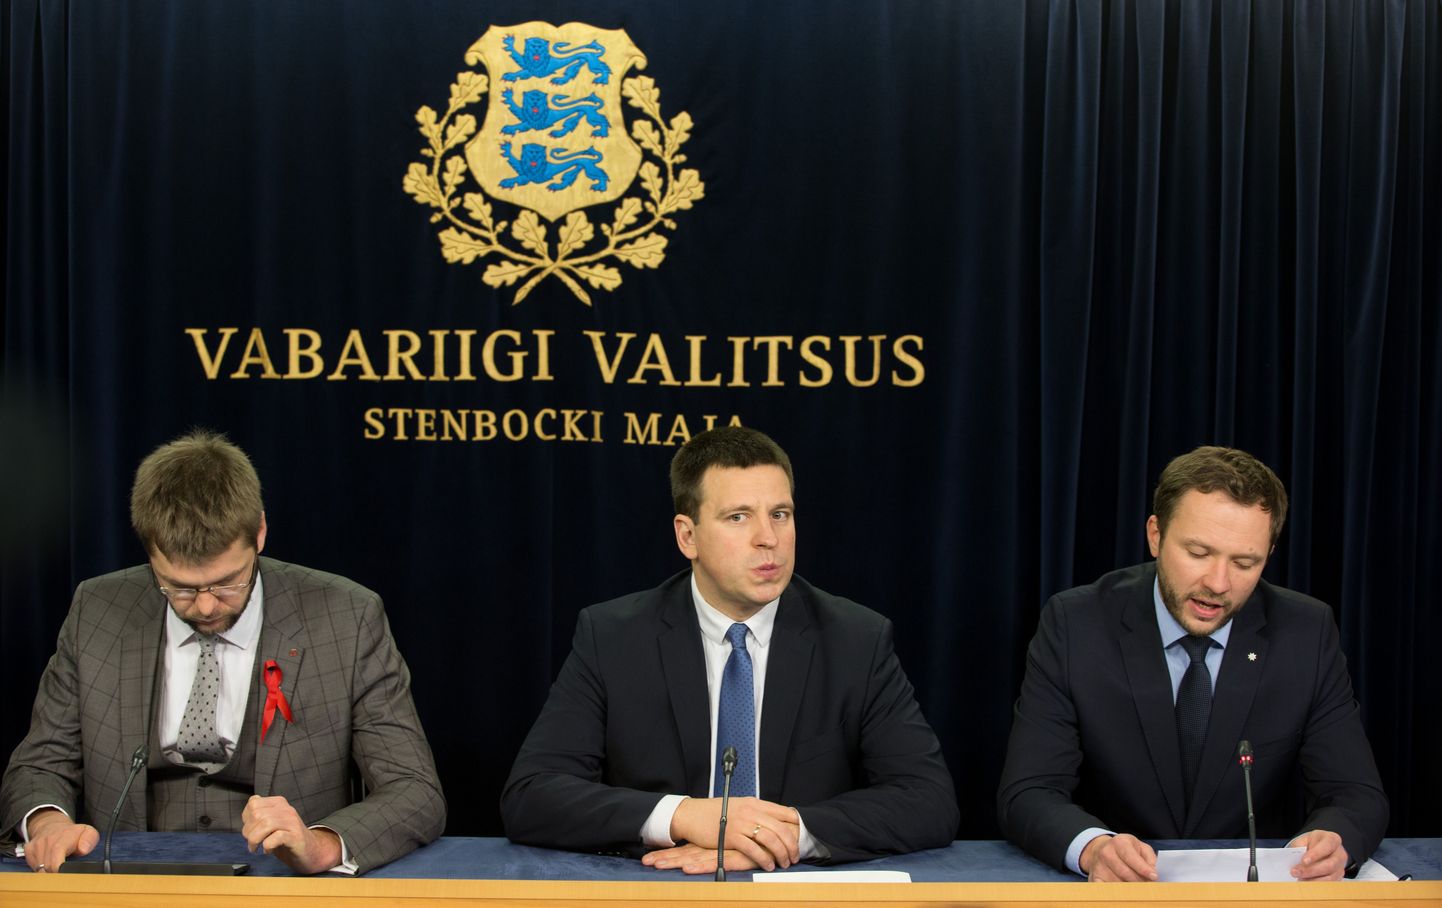 Võimuparteide juhid Jevgeni Ossinovski (SDE), peaminister Jüri Ratas (Keskerakond) ja Margus Tsahkna (IRL) valitsuse pressikonverentsil.